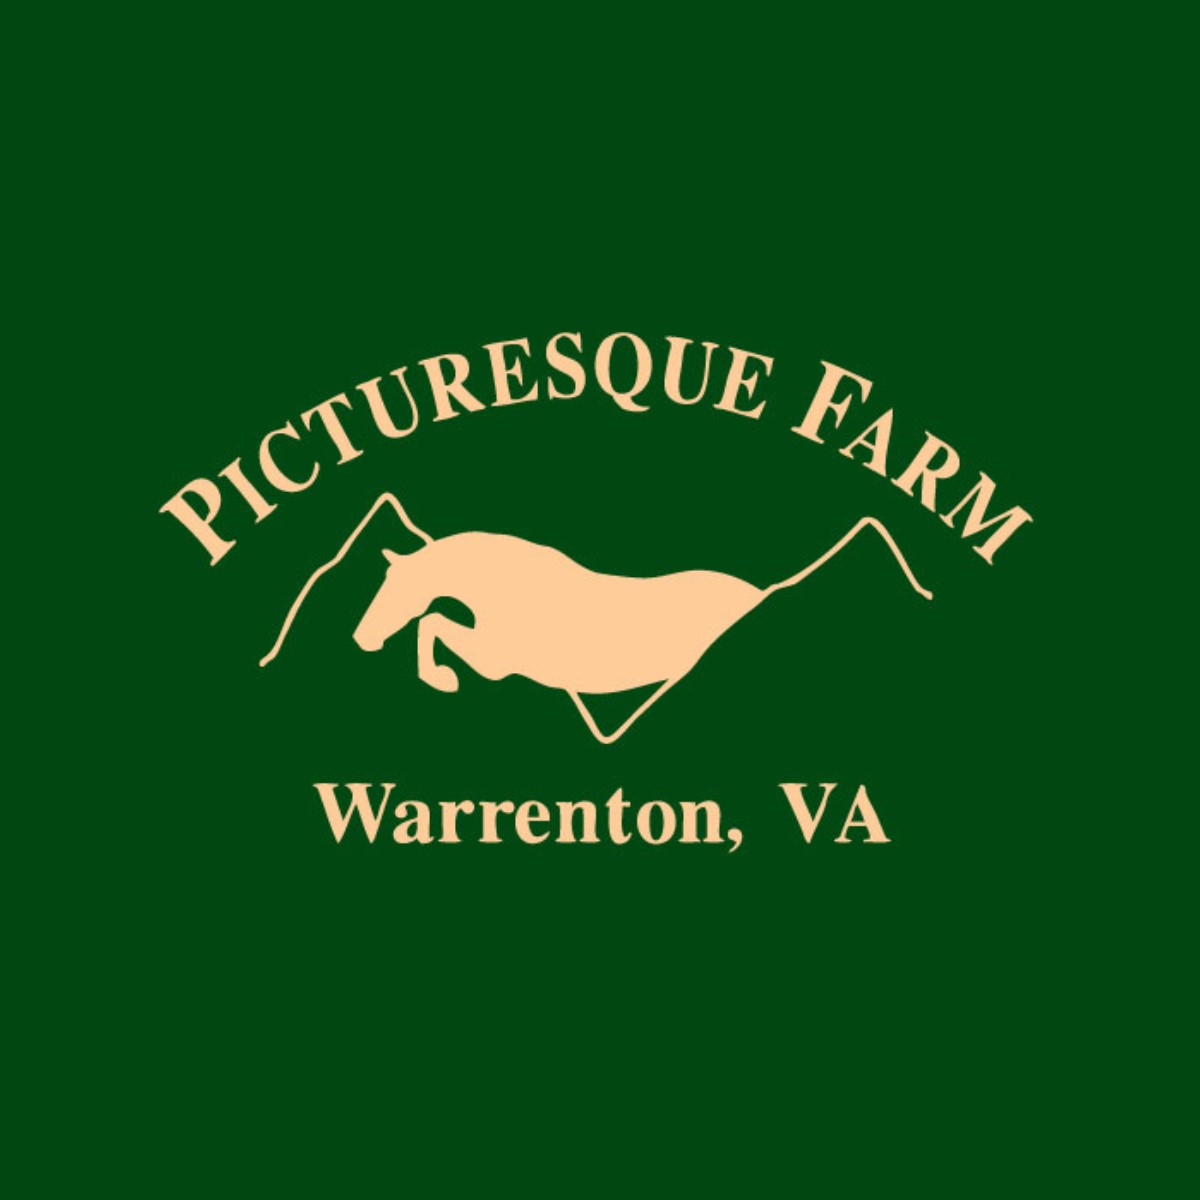 picturesque logo